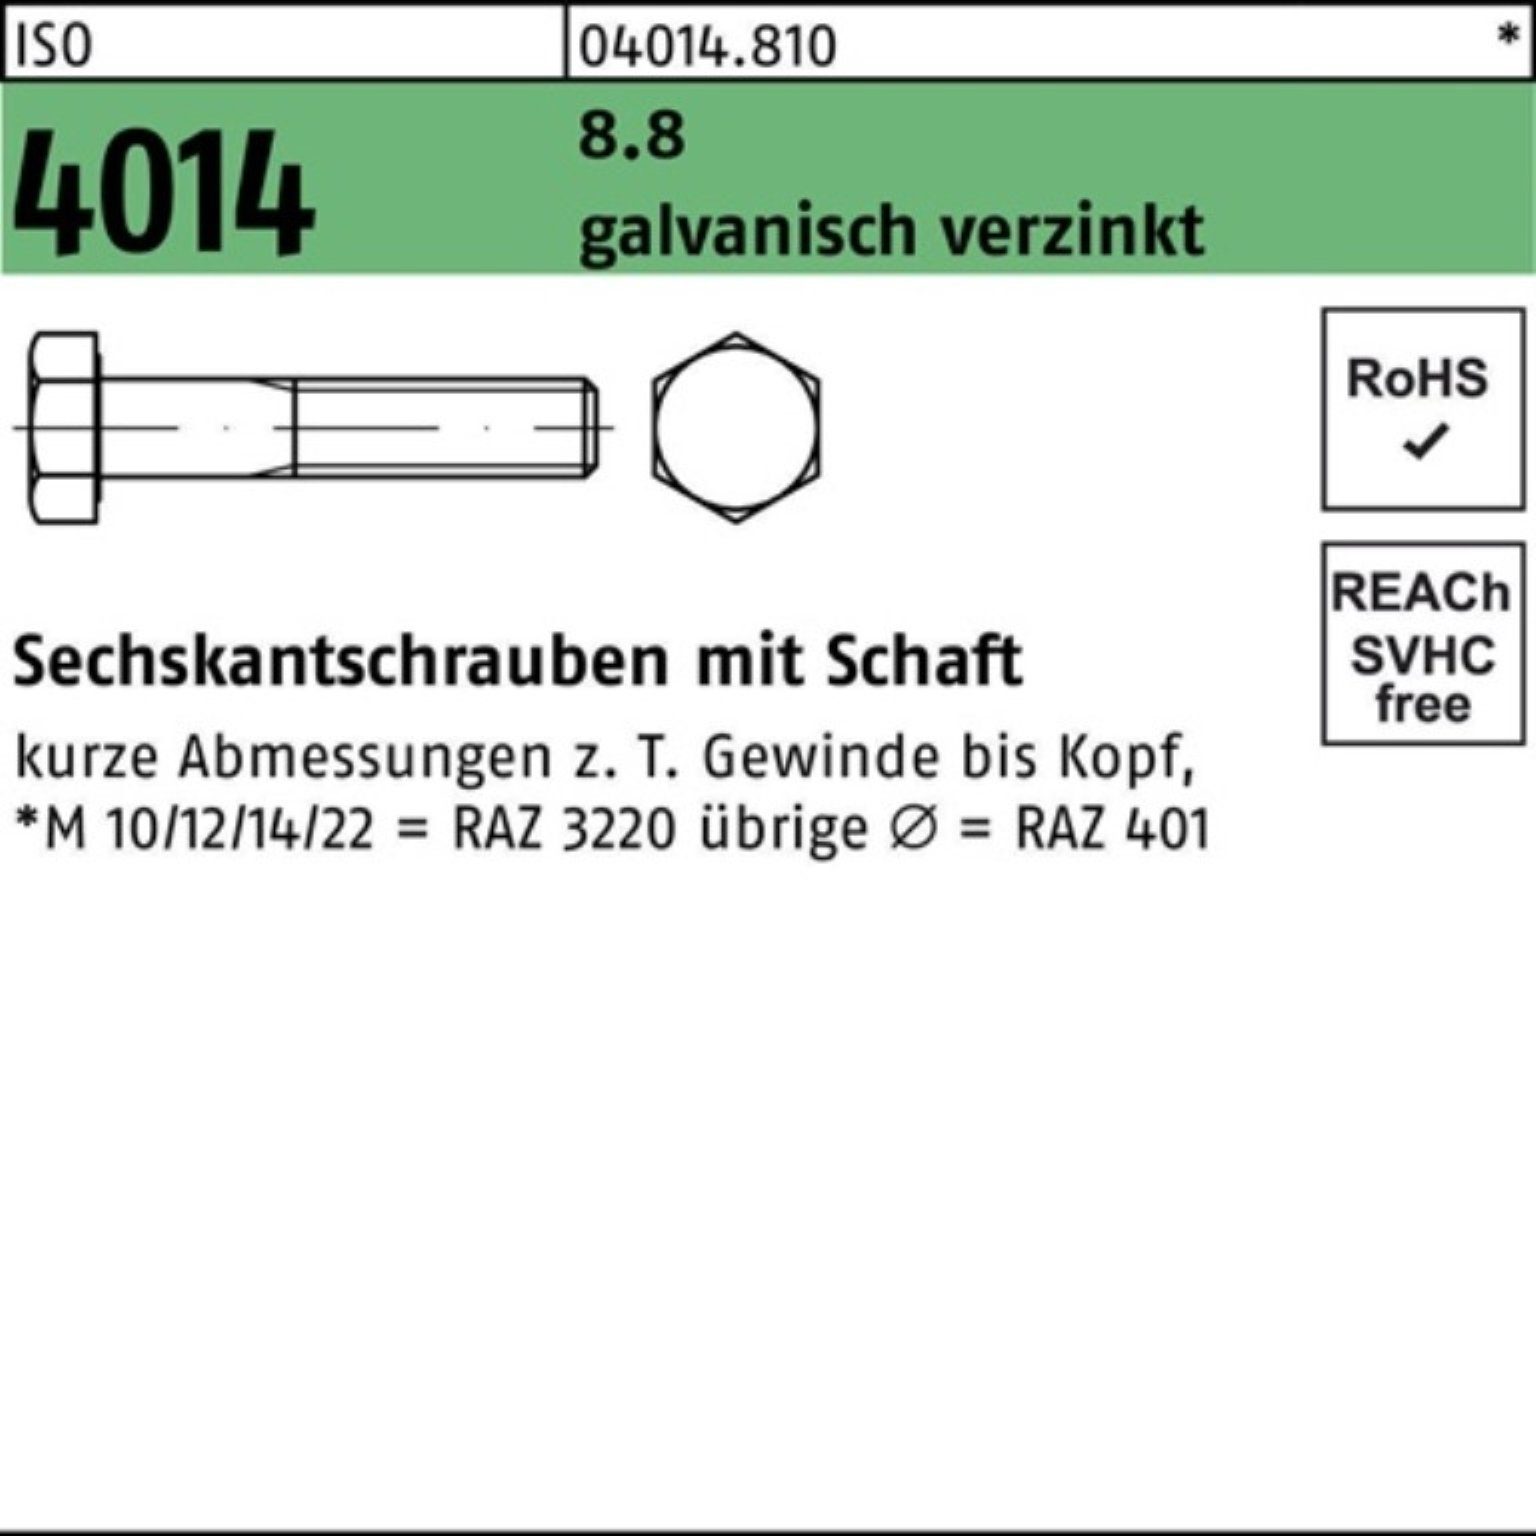 ISO Sechskantschraube 2 8.8 200 100er Sechskantschraube Pack 4014 galv.verz. M16x Bufab Schaft